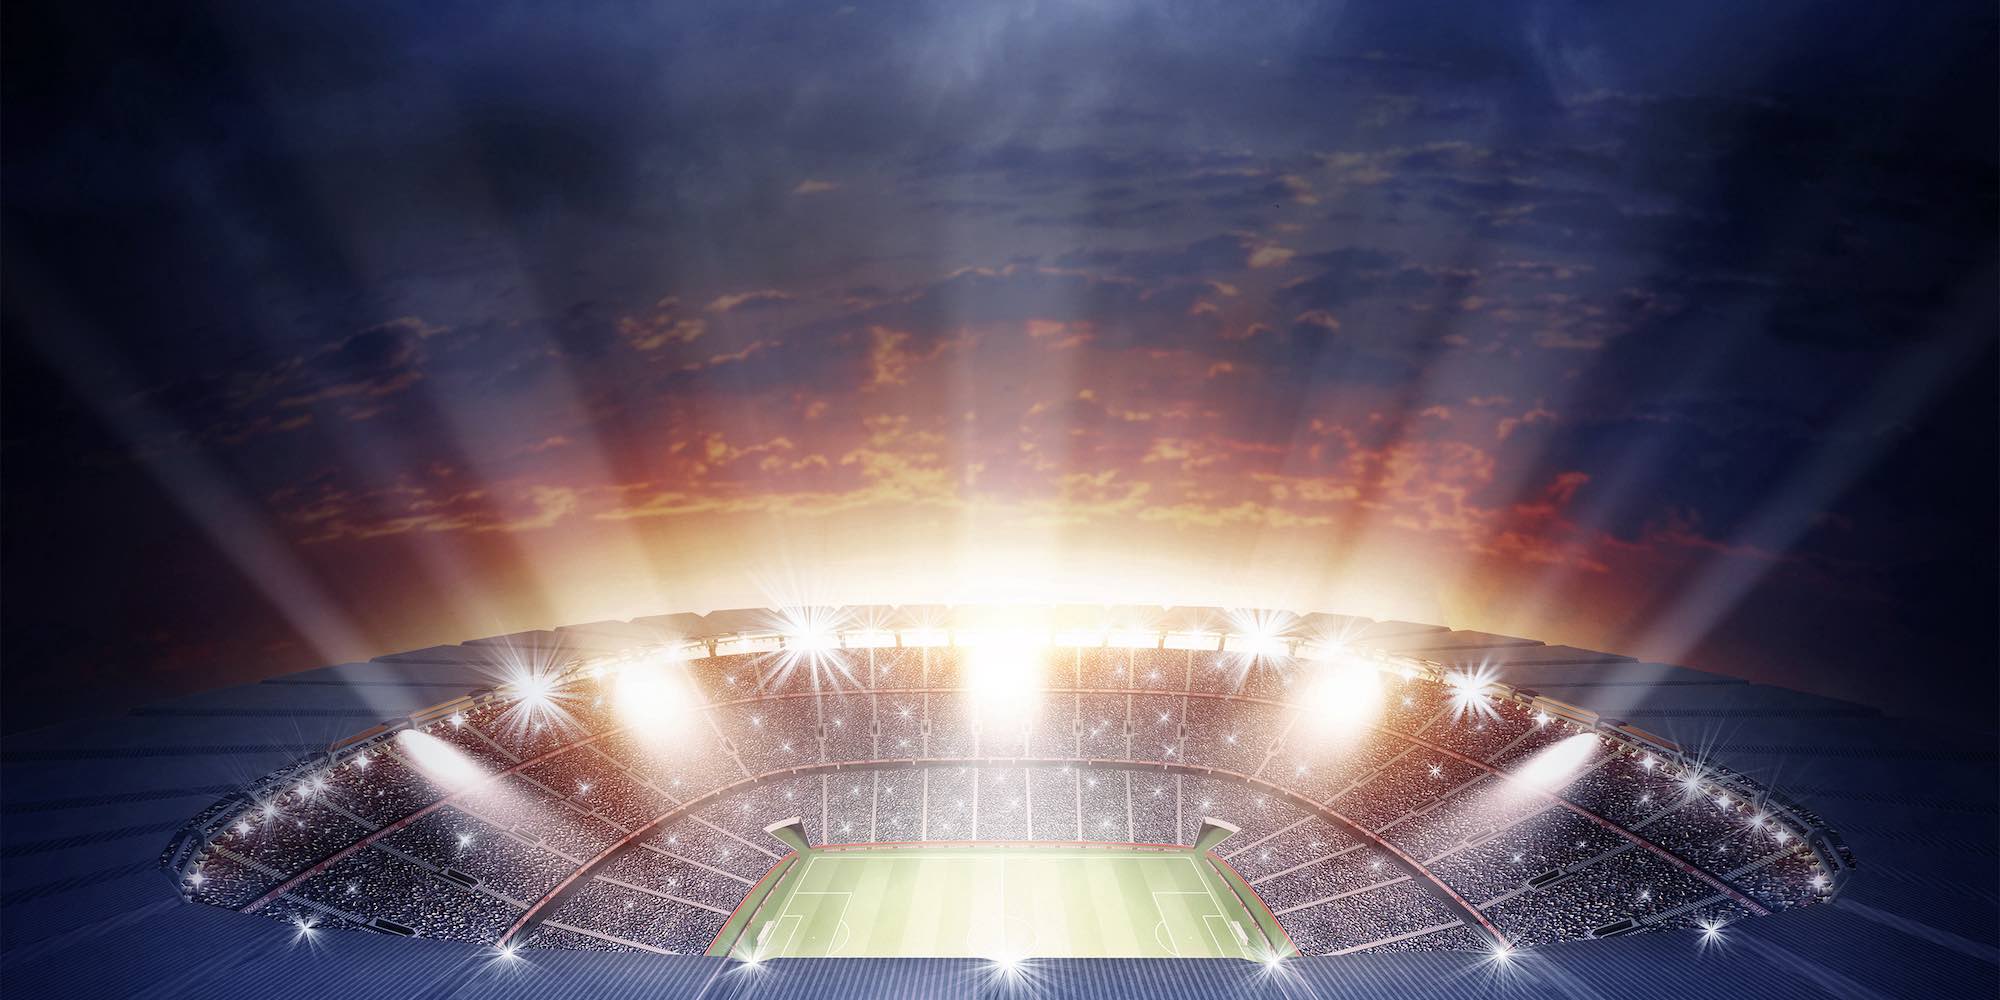 Großes Bild mit einem Fußballstadion. CASHPOINT Partner Hintergrundbild.